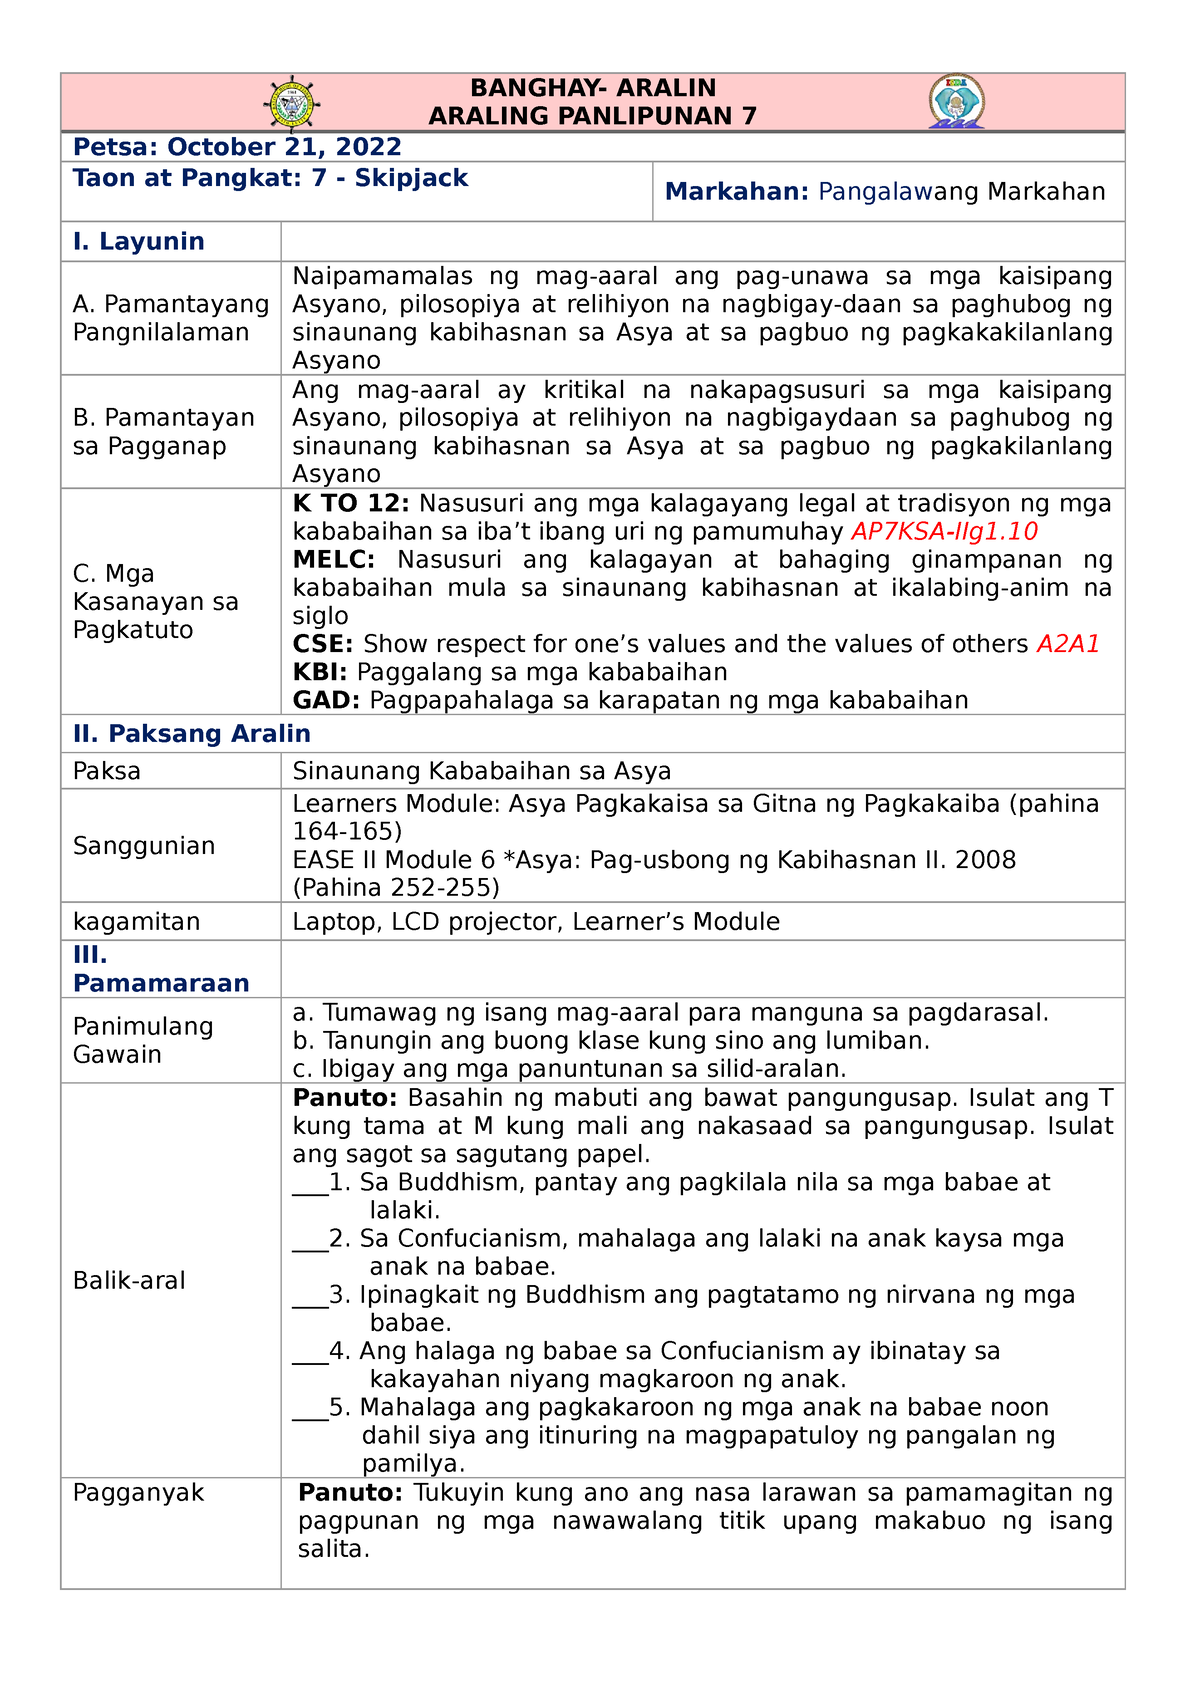 Cot Lesson Plan In Araling Panlipunan 94d 8410